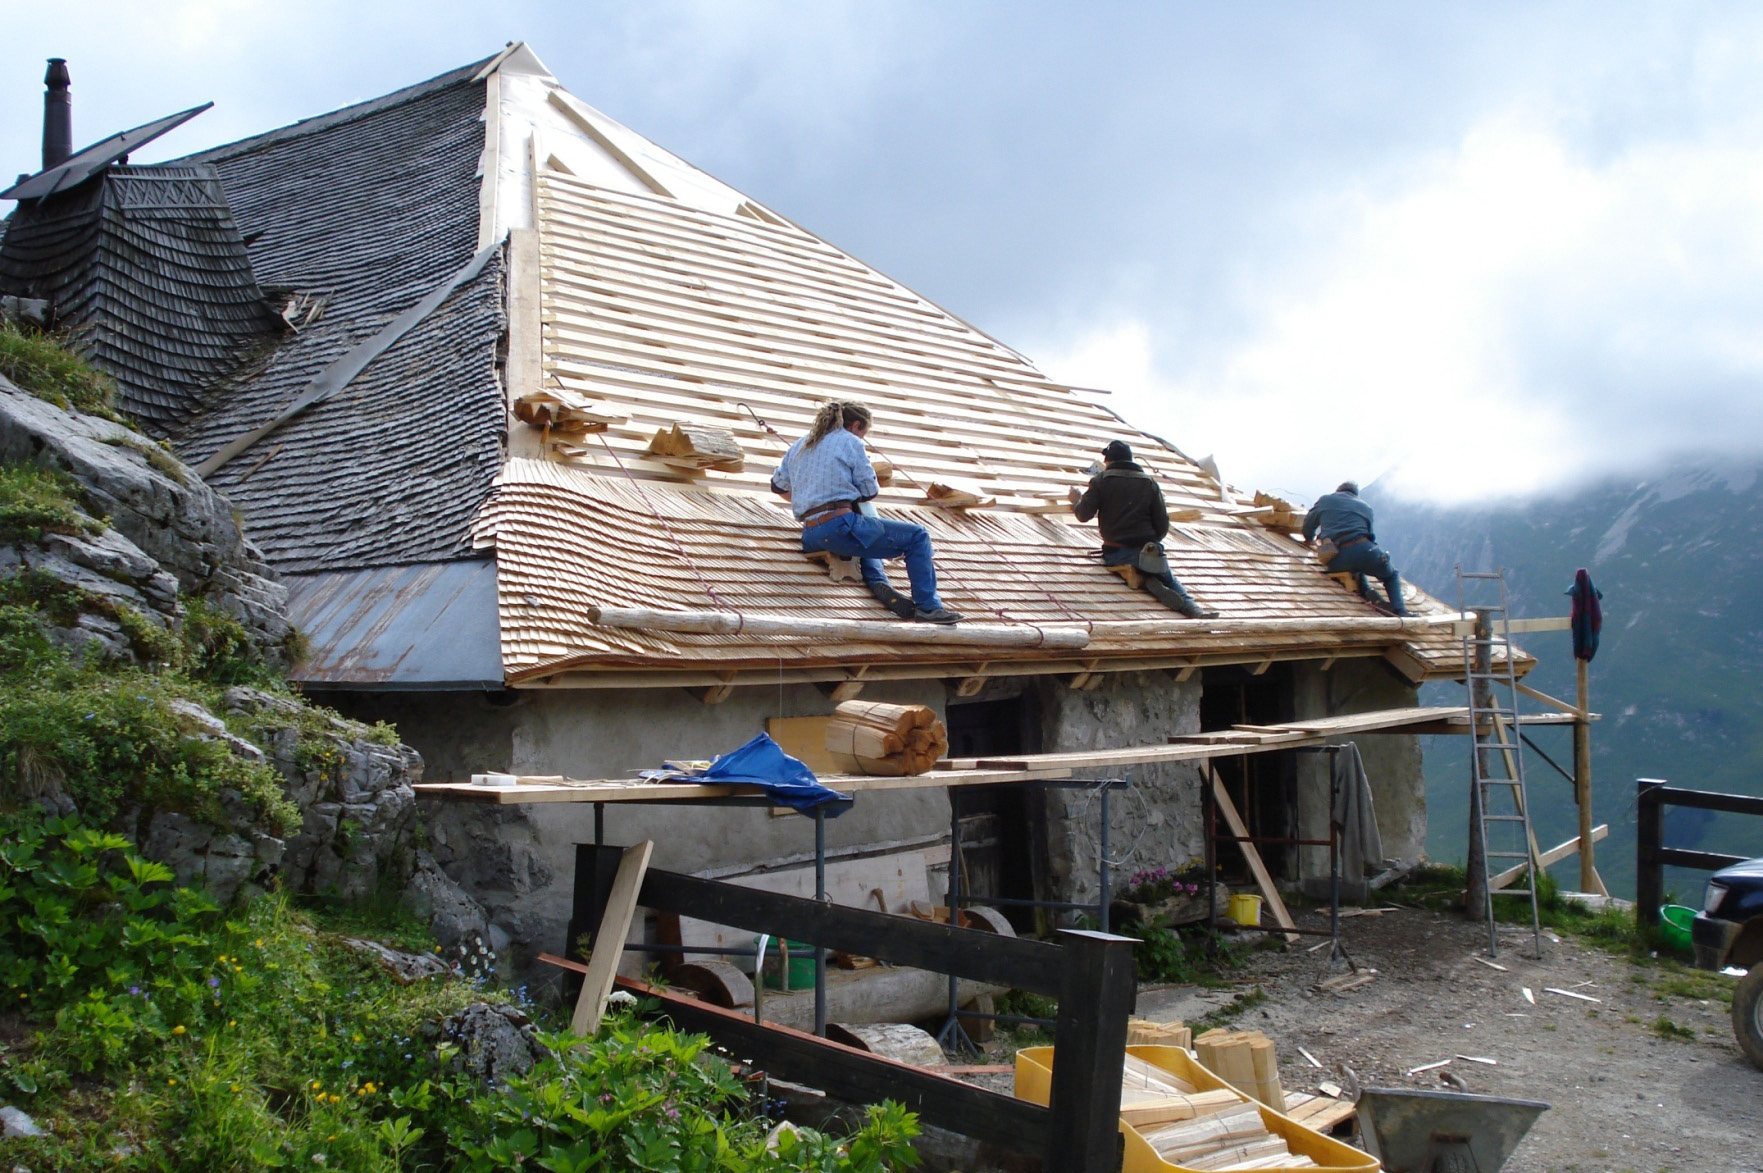 Chalet du Pralet, Schindelmacher an der Arbeit an einem grossen Dach © Florence Bays, 2007